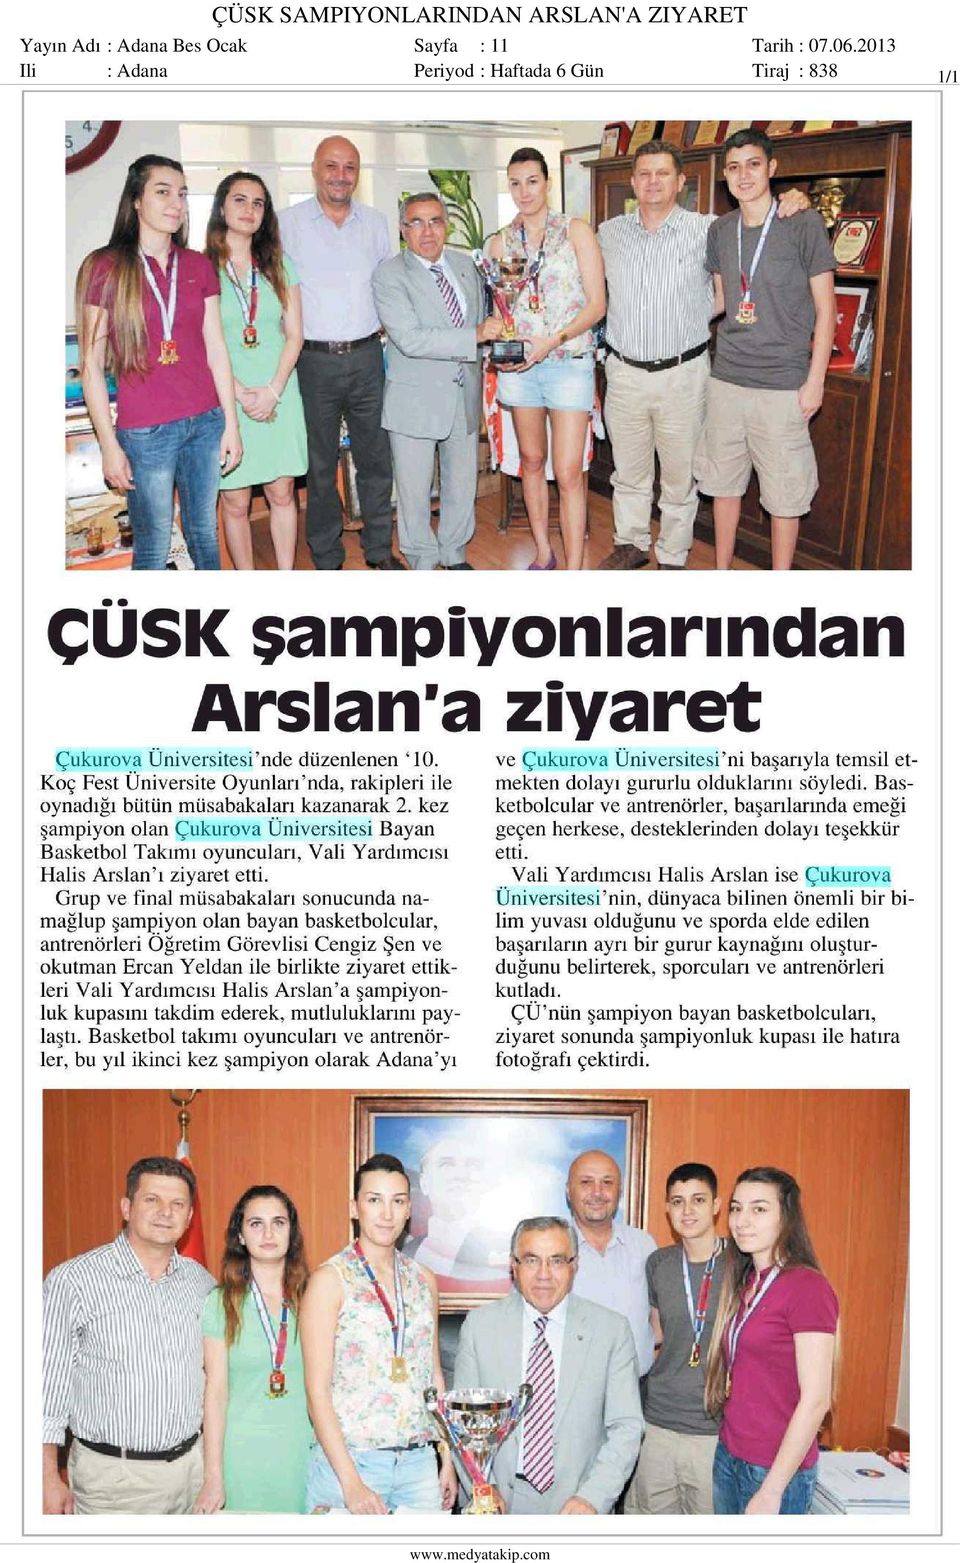 Ocak Sayfa : 11 Ili : Adana